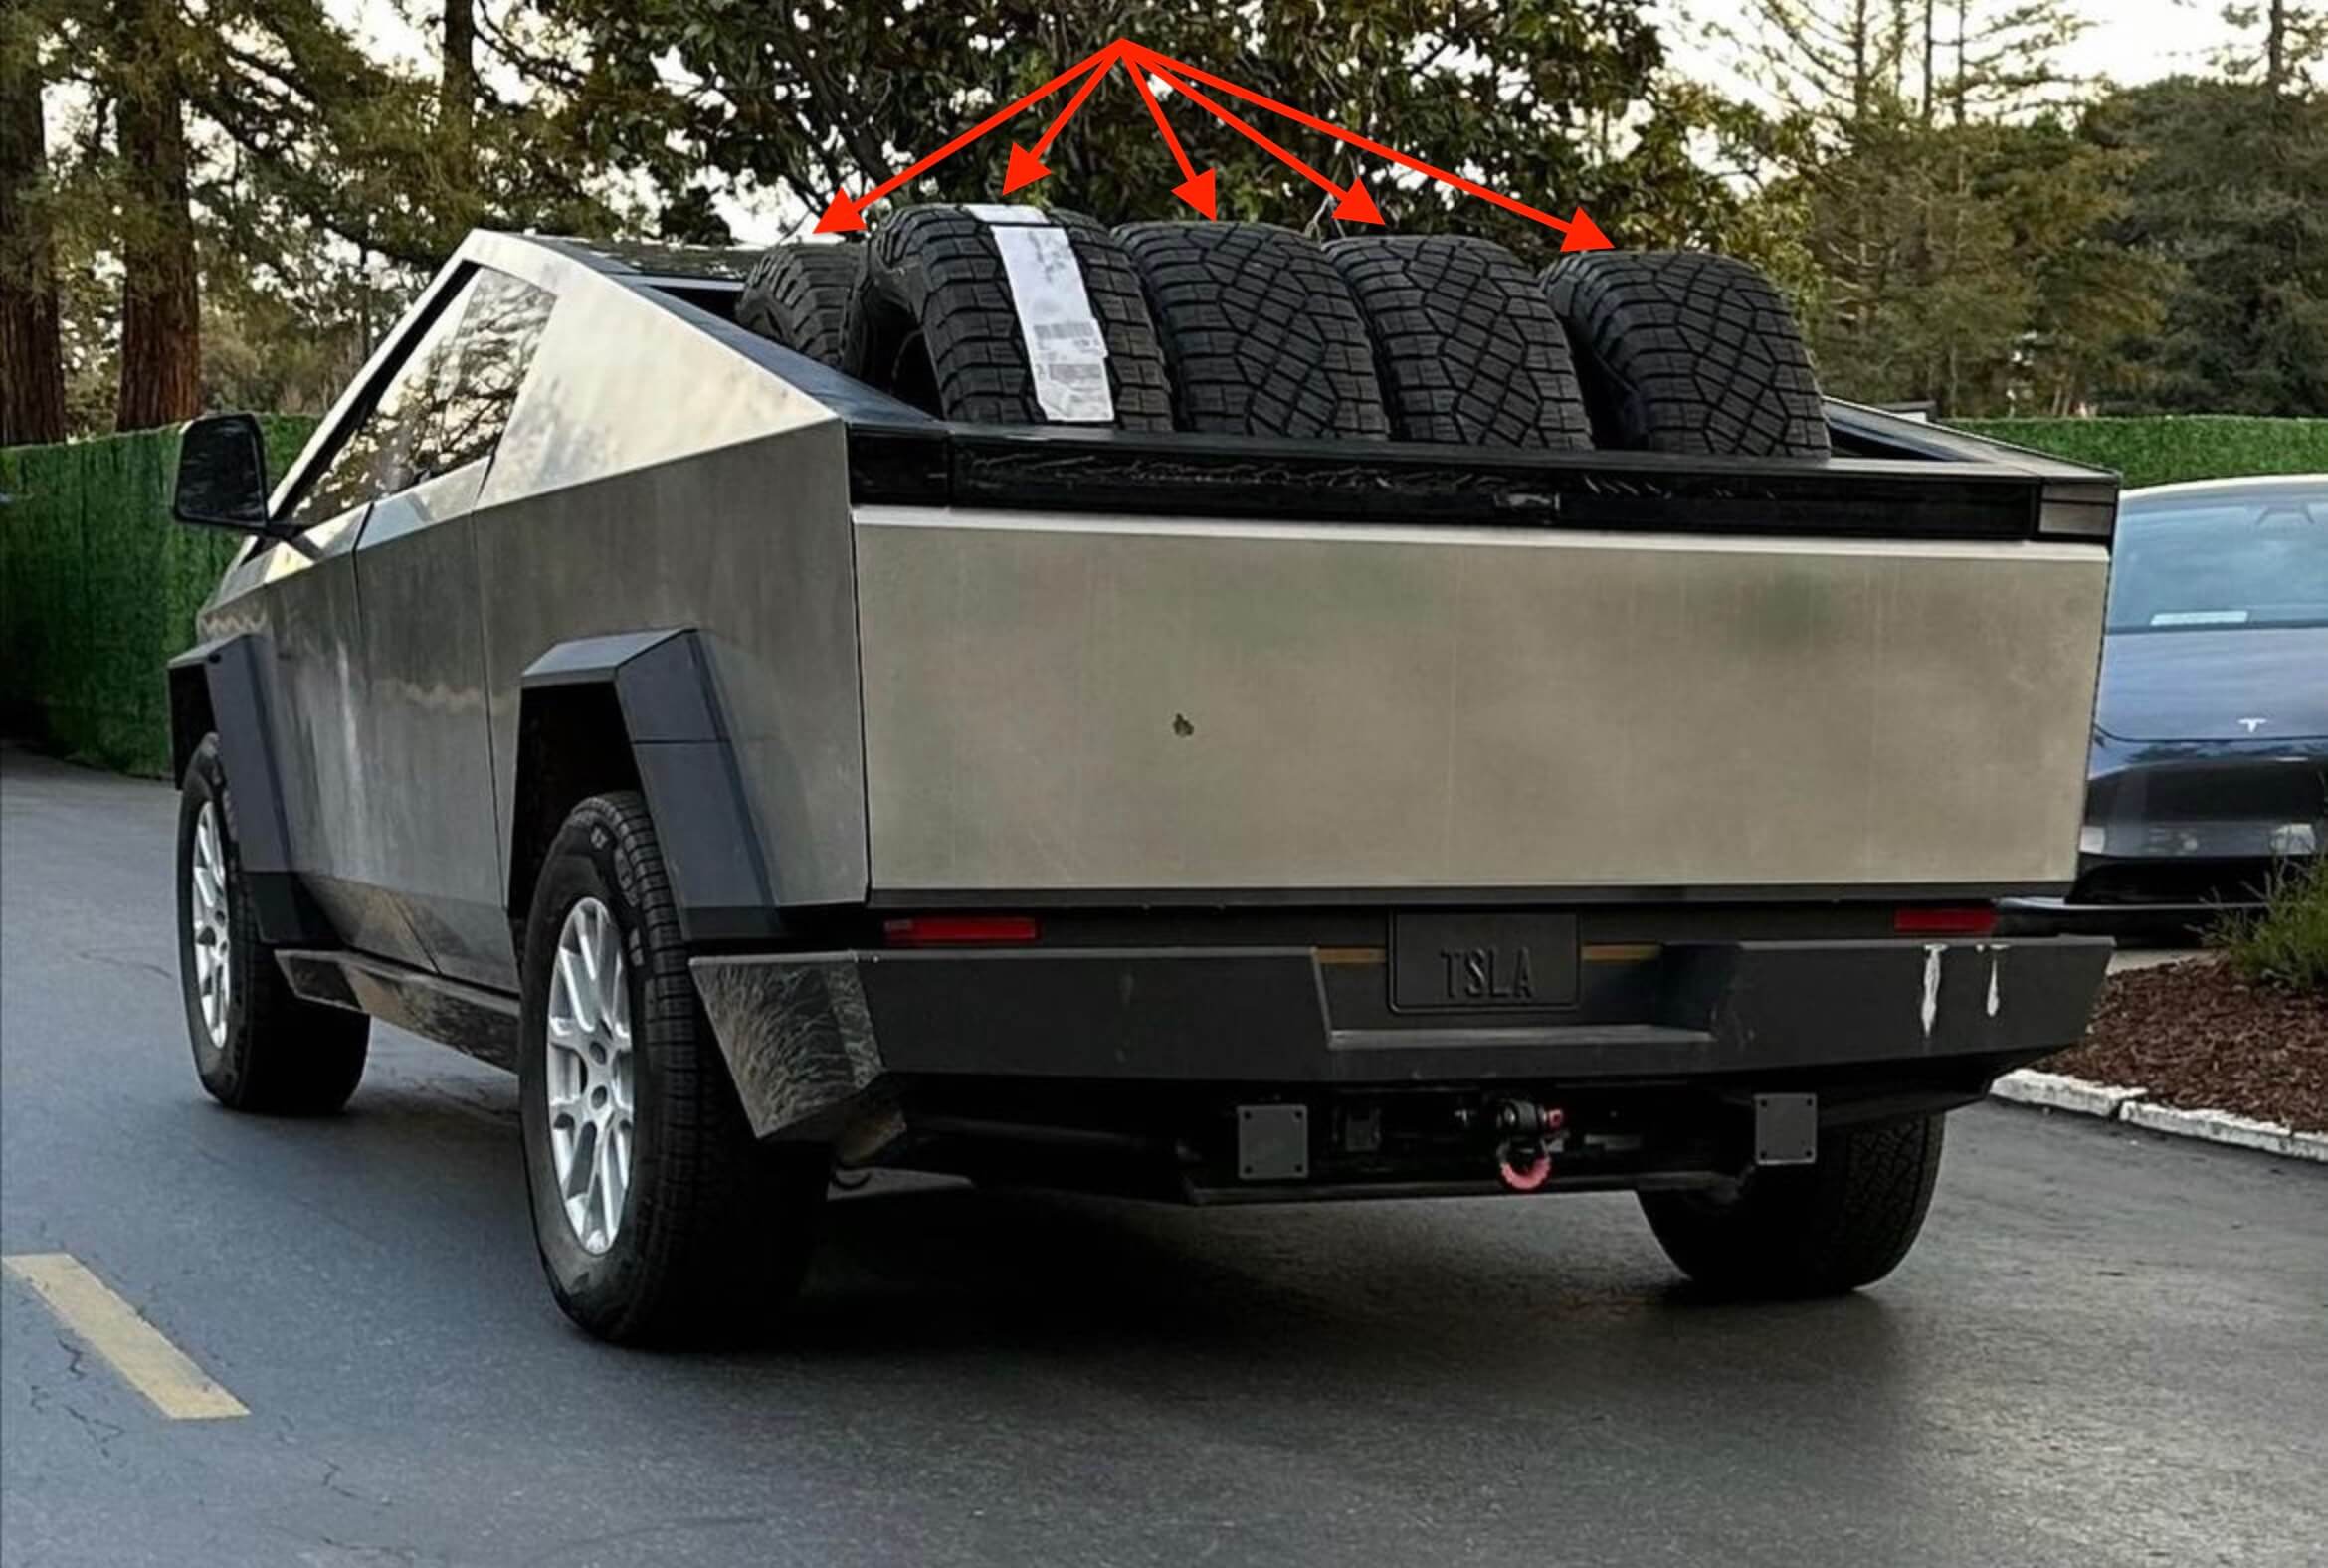 Prototaip Tesla Cybertruck alpha menunjukkan kapasiti katilnya dengan membawa berbilang tayar luar jalan